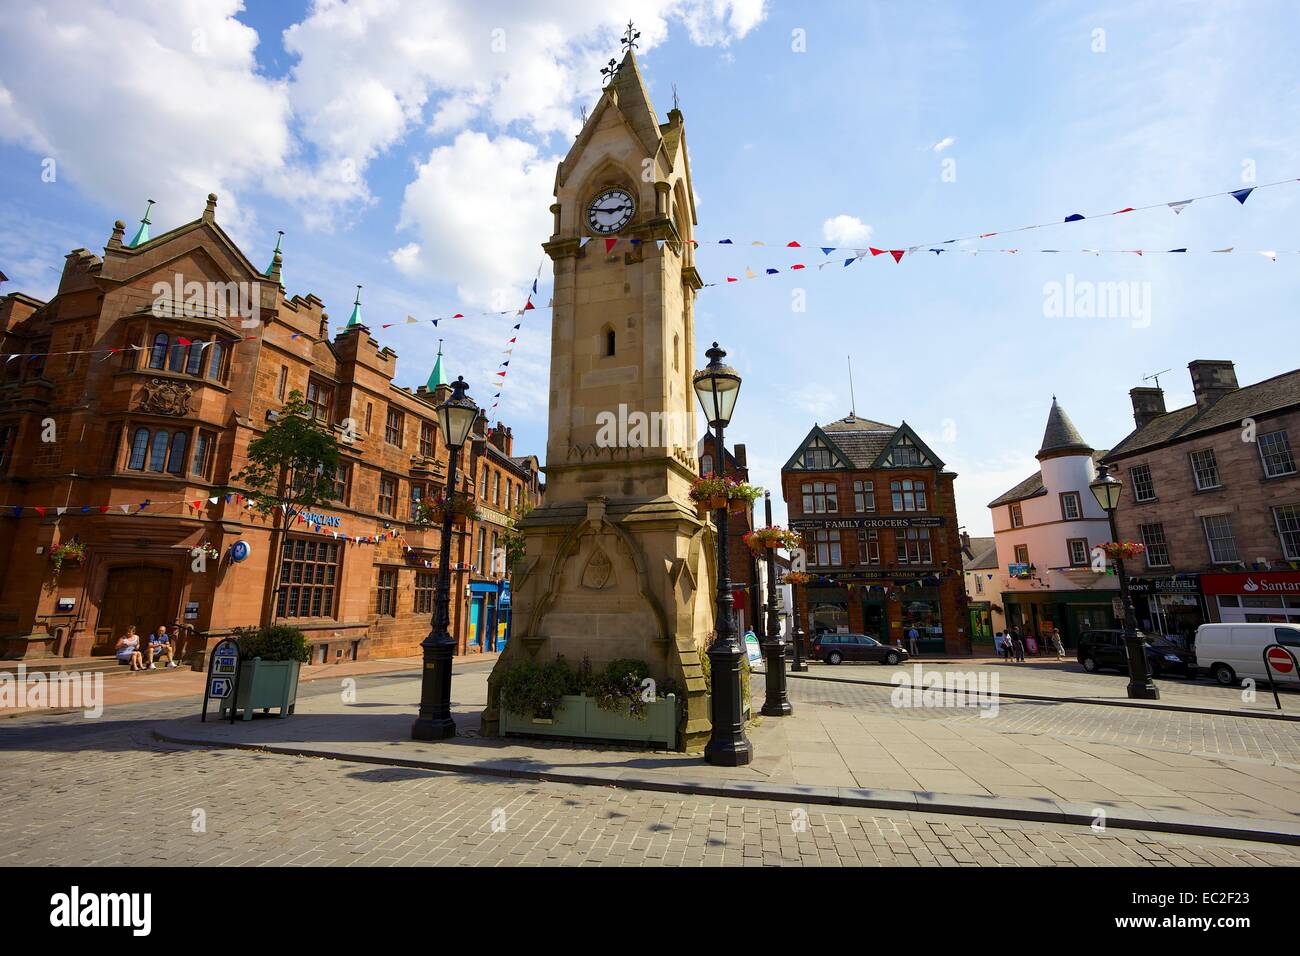 Dans l'horloge de la place du marché pavée, King Street dans le centre-ville de Penrith, Cumbria, Angleterre, Royaume-Uni. Banque D'Images